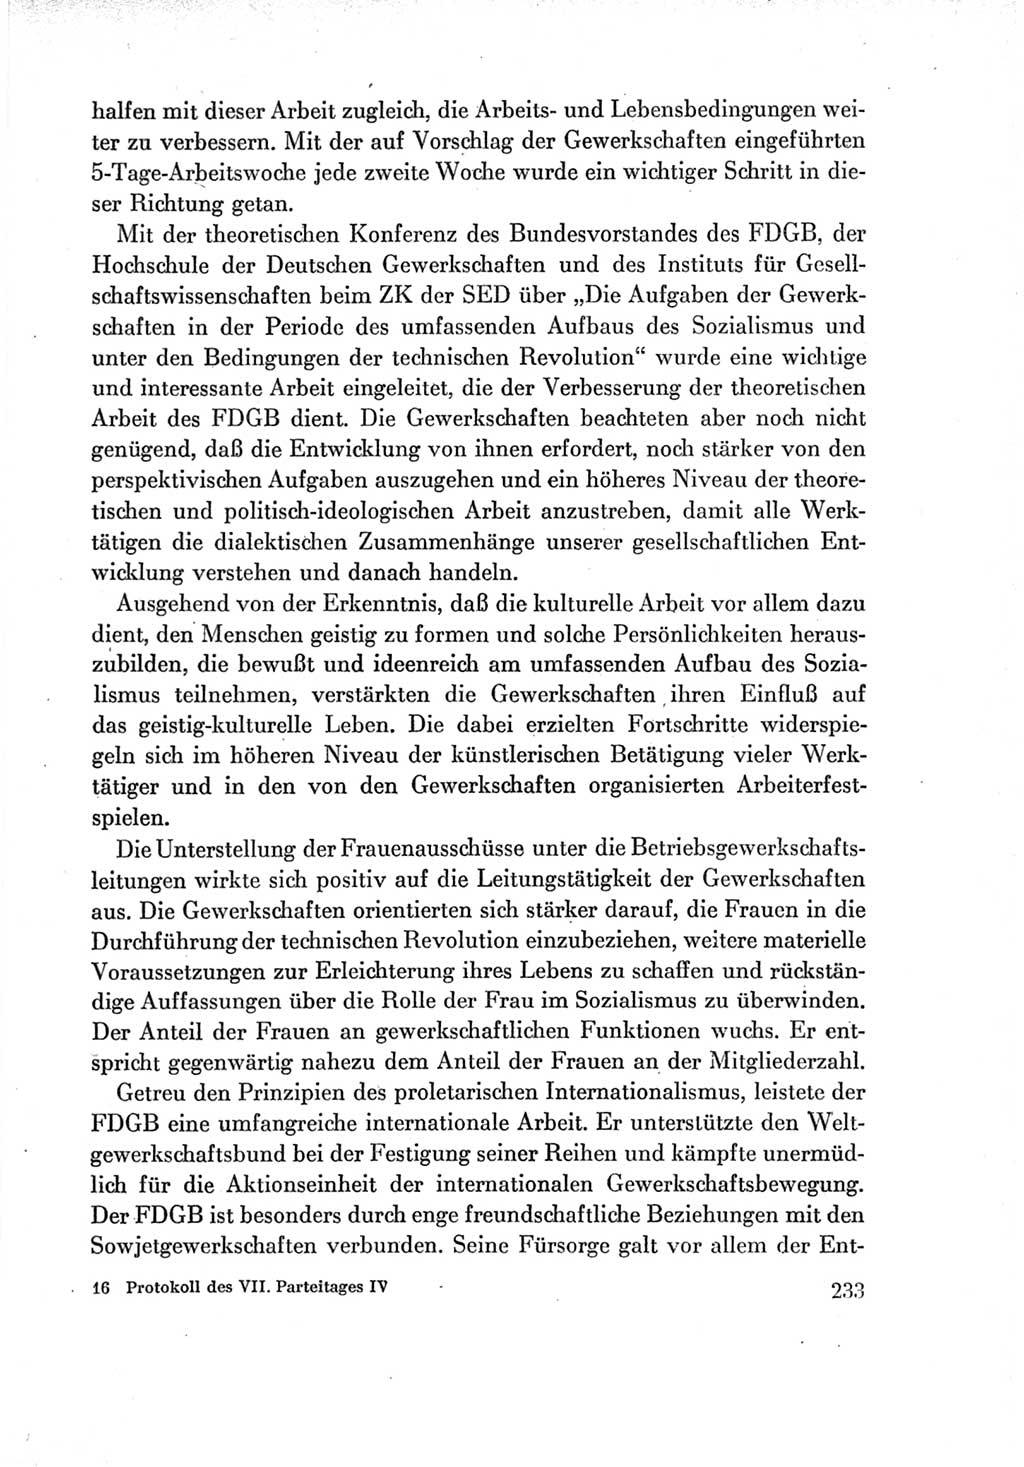 Protokoll der Verhandlungen des Ⅶ. Parteitages der Sozialistischen Einheitspartei Deutschlands (SED) [Deutsche Demokratische Republik (DDR)] 1967, Band Ⅳ, Seite 233 (Prot. Verh. Ⅶ. PT SED DDR 1967, Bd. Ⅳ, S. 233)